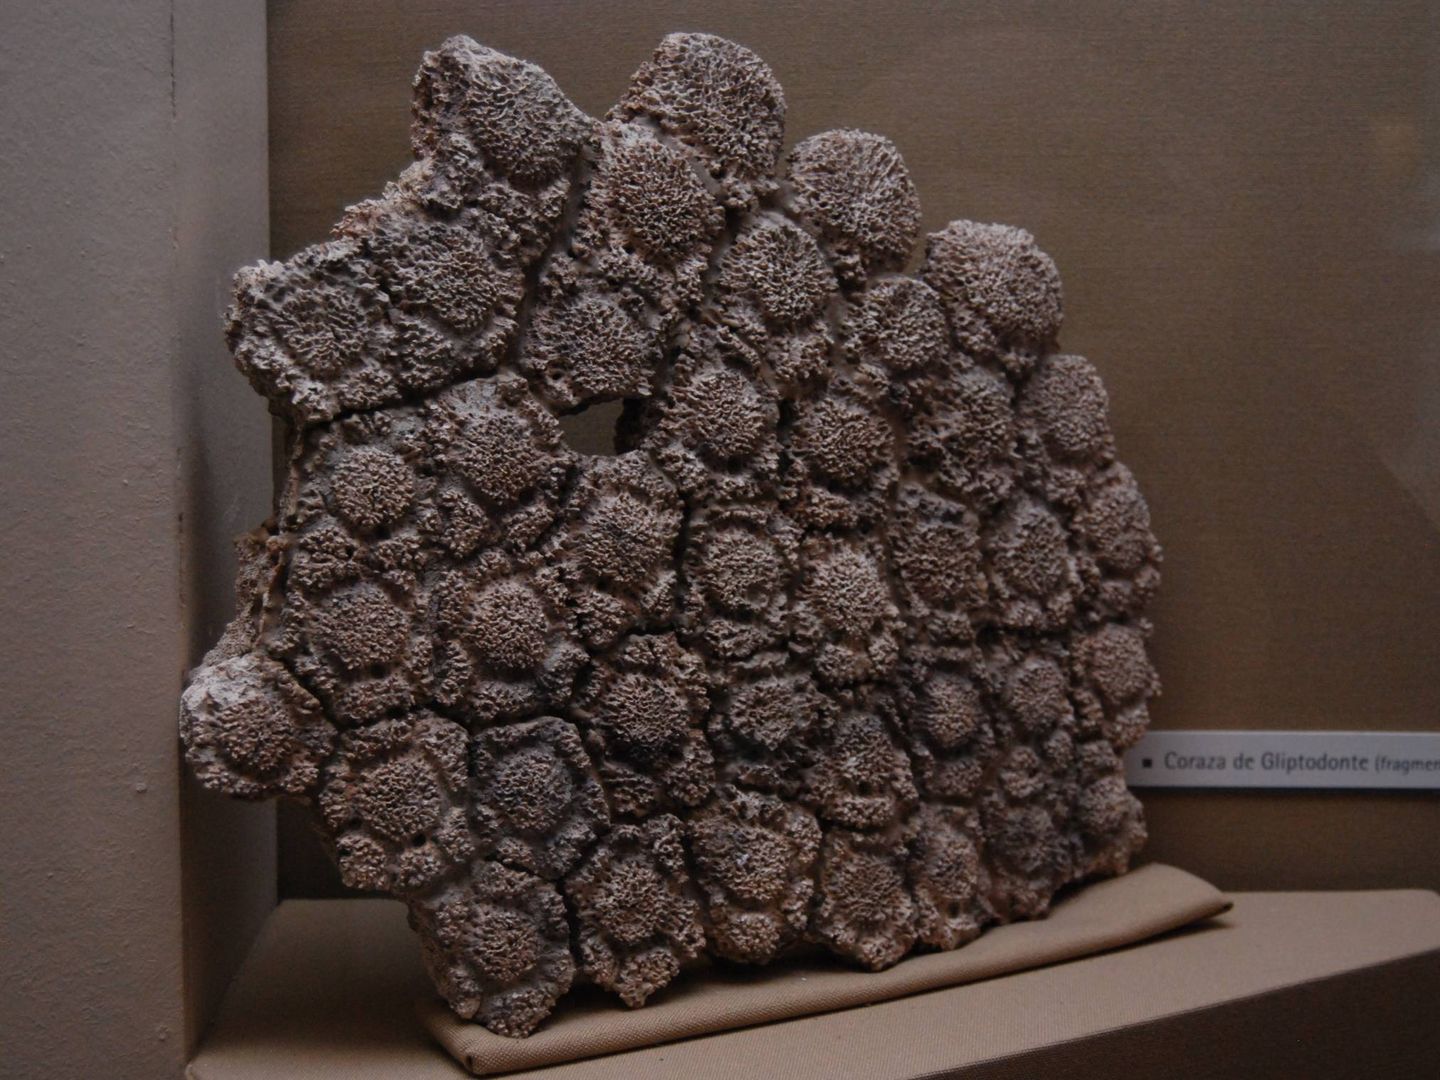 Fragmento de un caparazon de 'gliptodonte', exhibido en el Museo de La Plata, Argentina. (Wikimedia Commons)